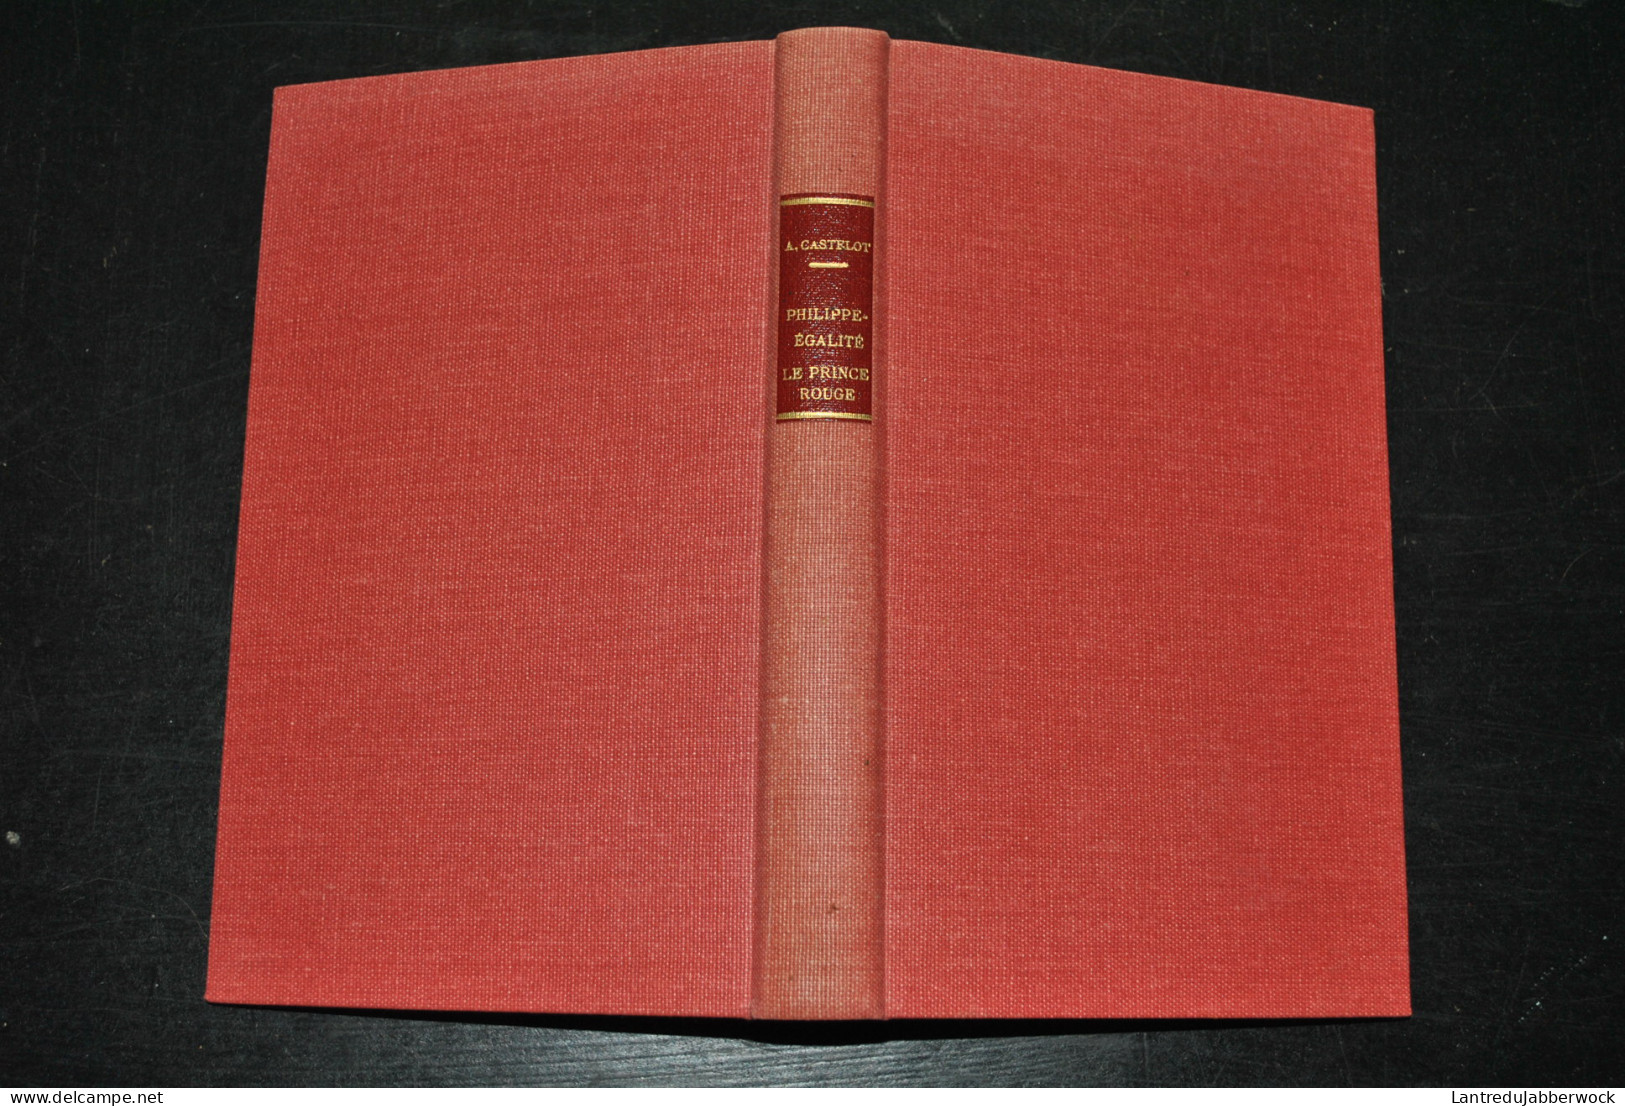 André CASTELOT Philippe-Egalité Le Prince Rouge Documents Inédits Révolution Edition Revue Et Corrigée SFELT 1951 - History